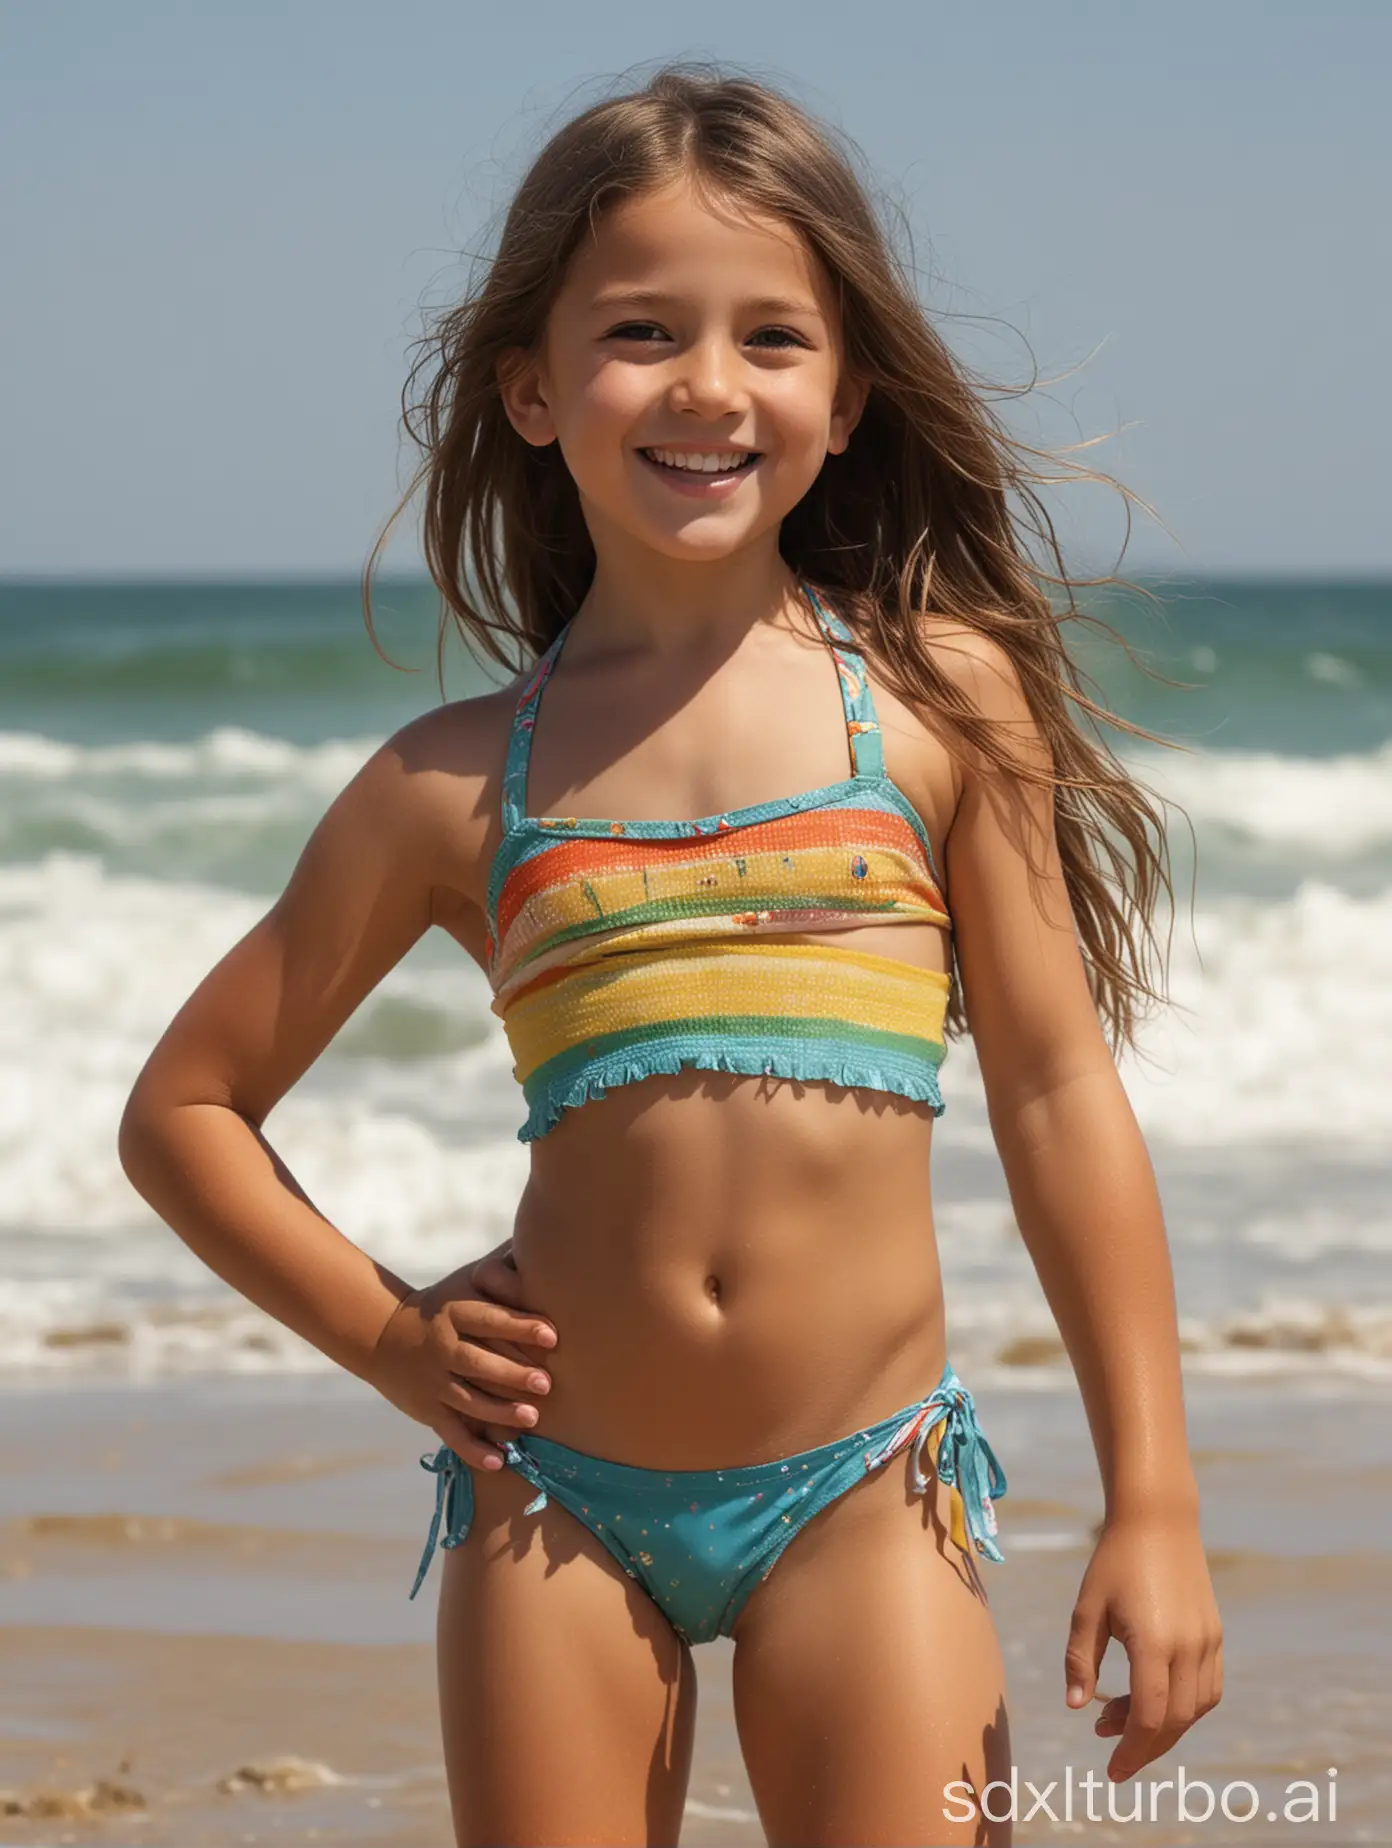 Confident-9YearOld-Girl-Enjoying-Beach-Day-in-Bikini